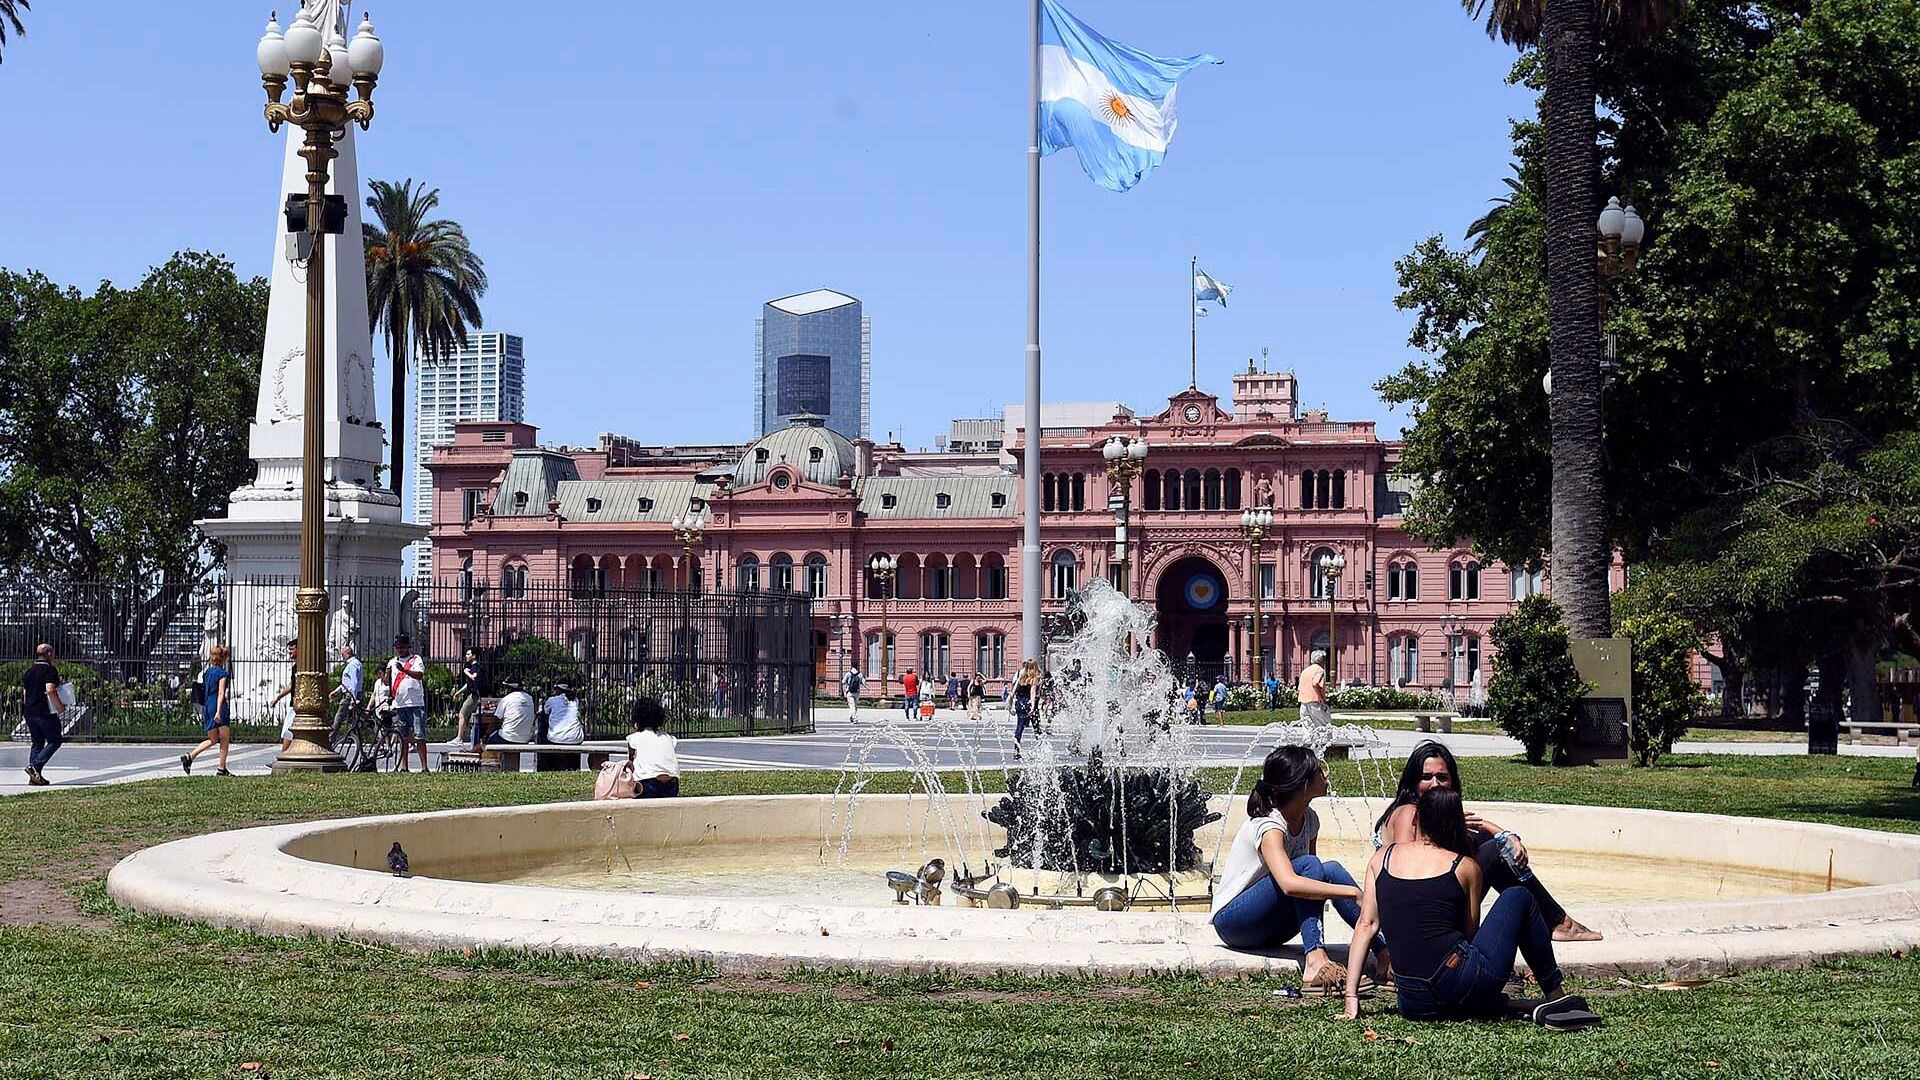 La ciudad de Buenos Aires registró altas temperaturas durante la jornada del jueves 